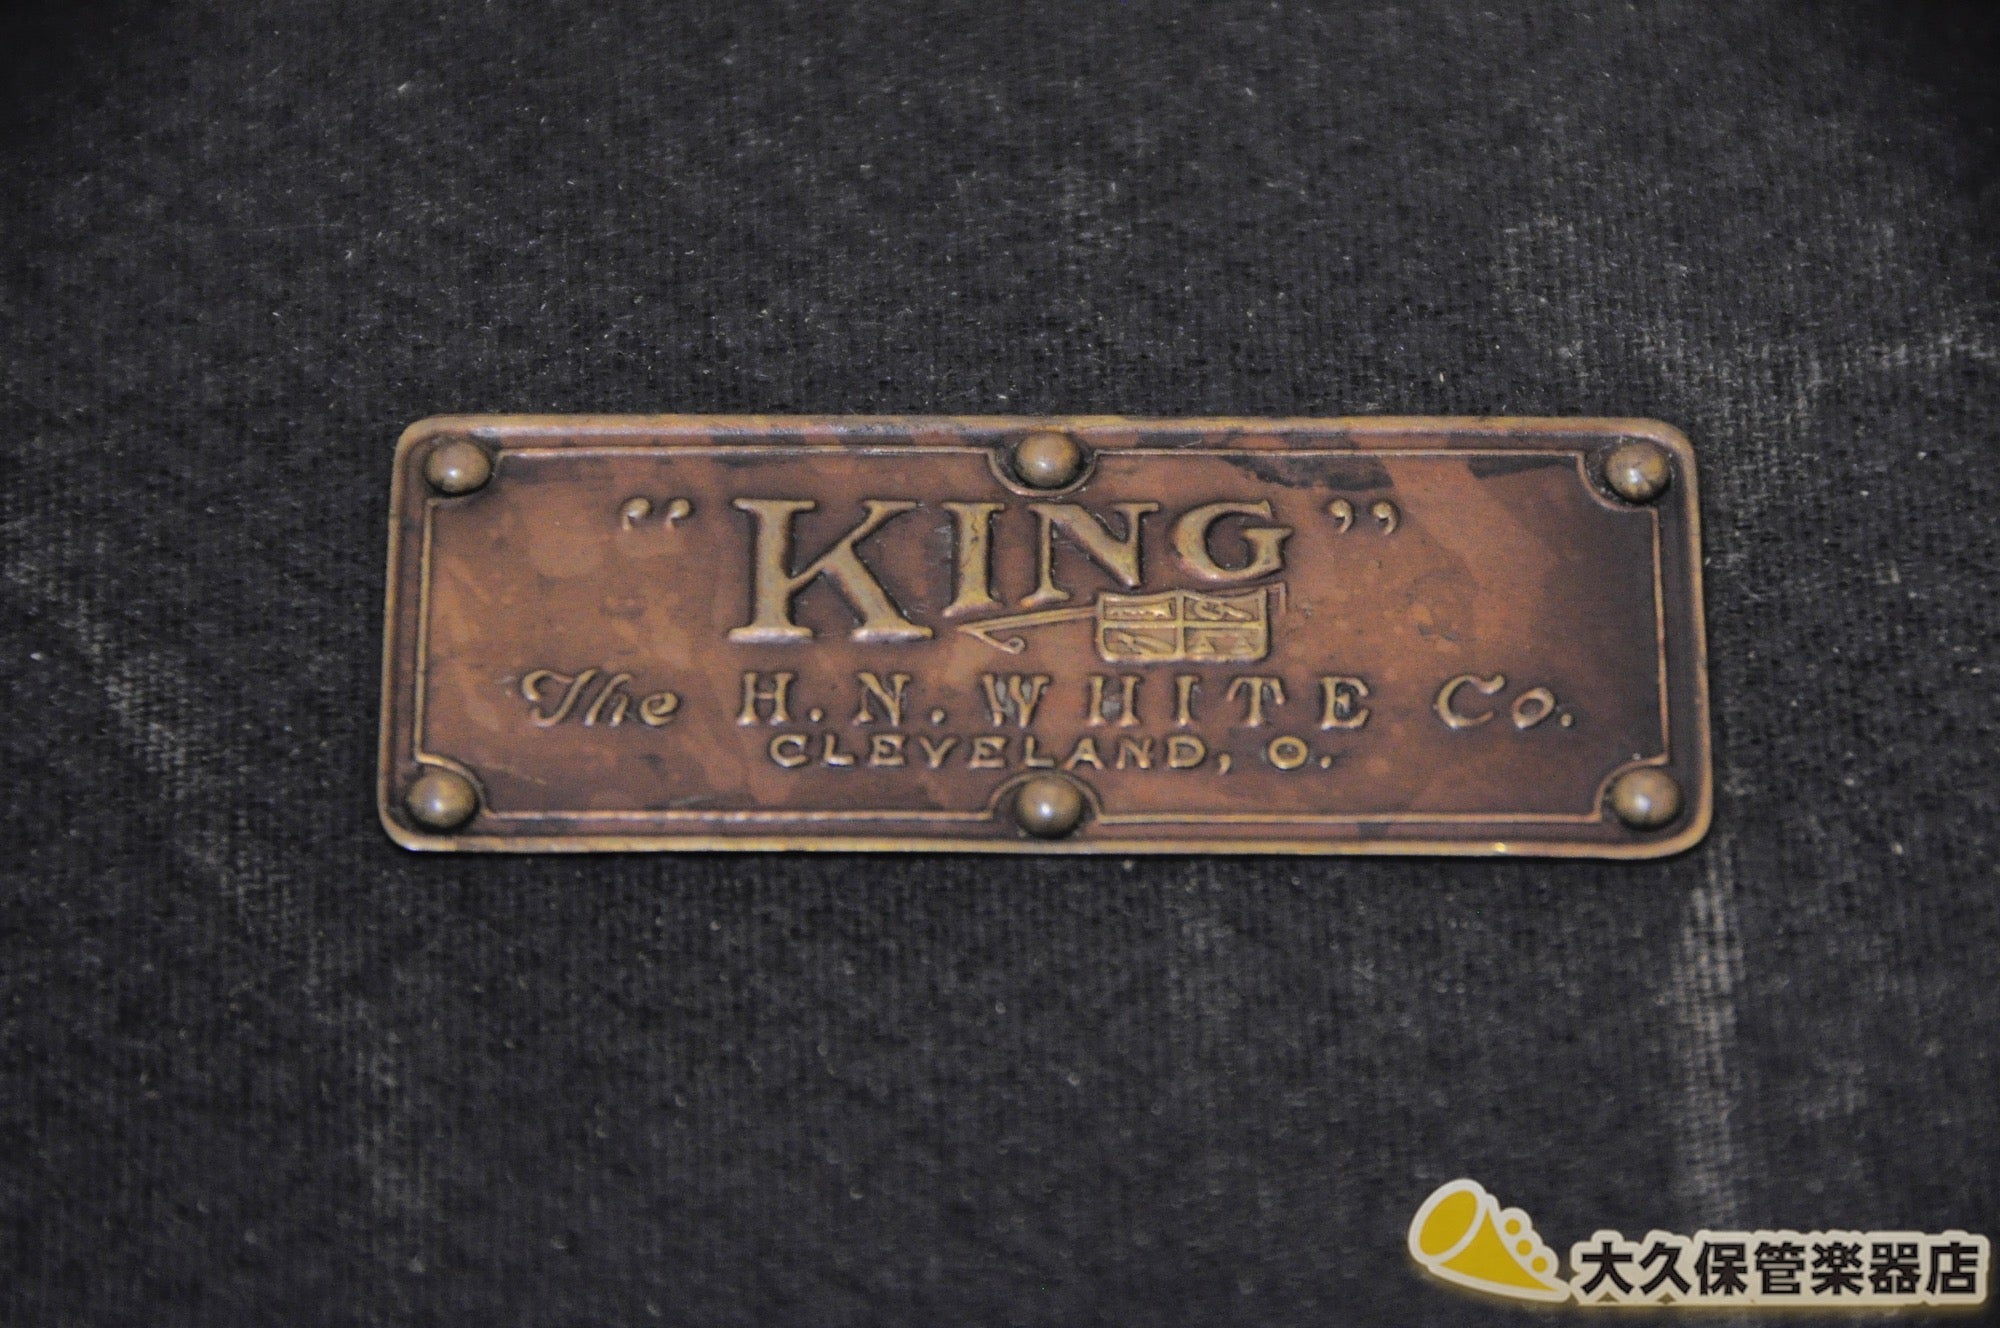 キング Voll-True Model Gold-plated アルトサクソフォン - TC楽器 - TCGAKKI